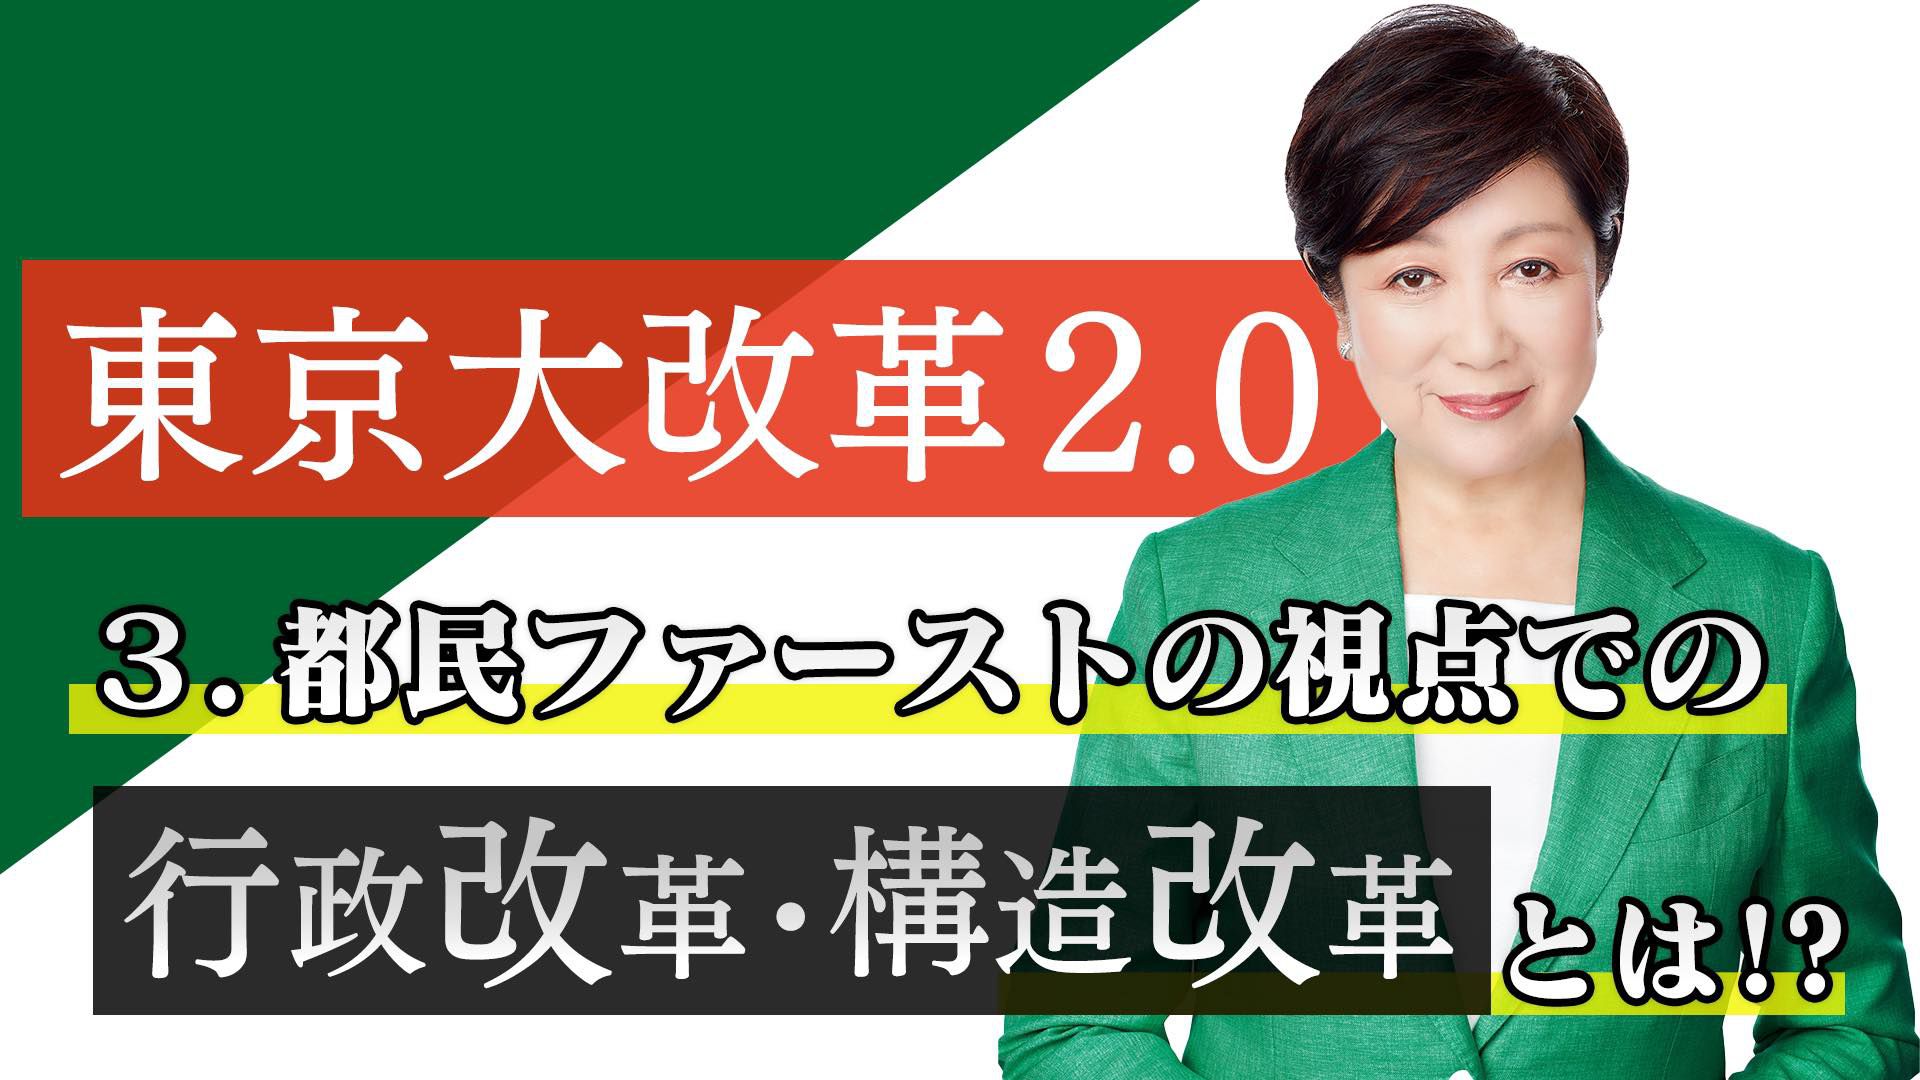 日本东京都知事选情小池百合子支持率领先 多维新闻 全球